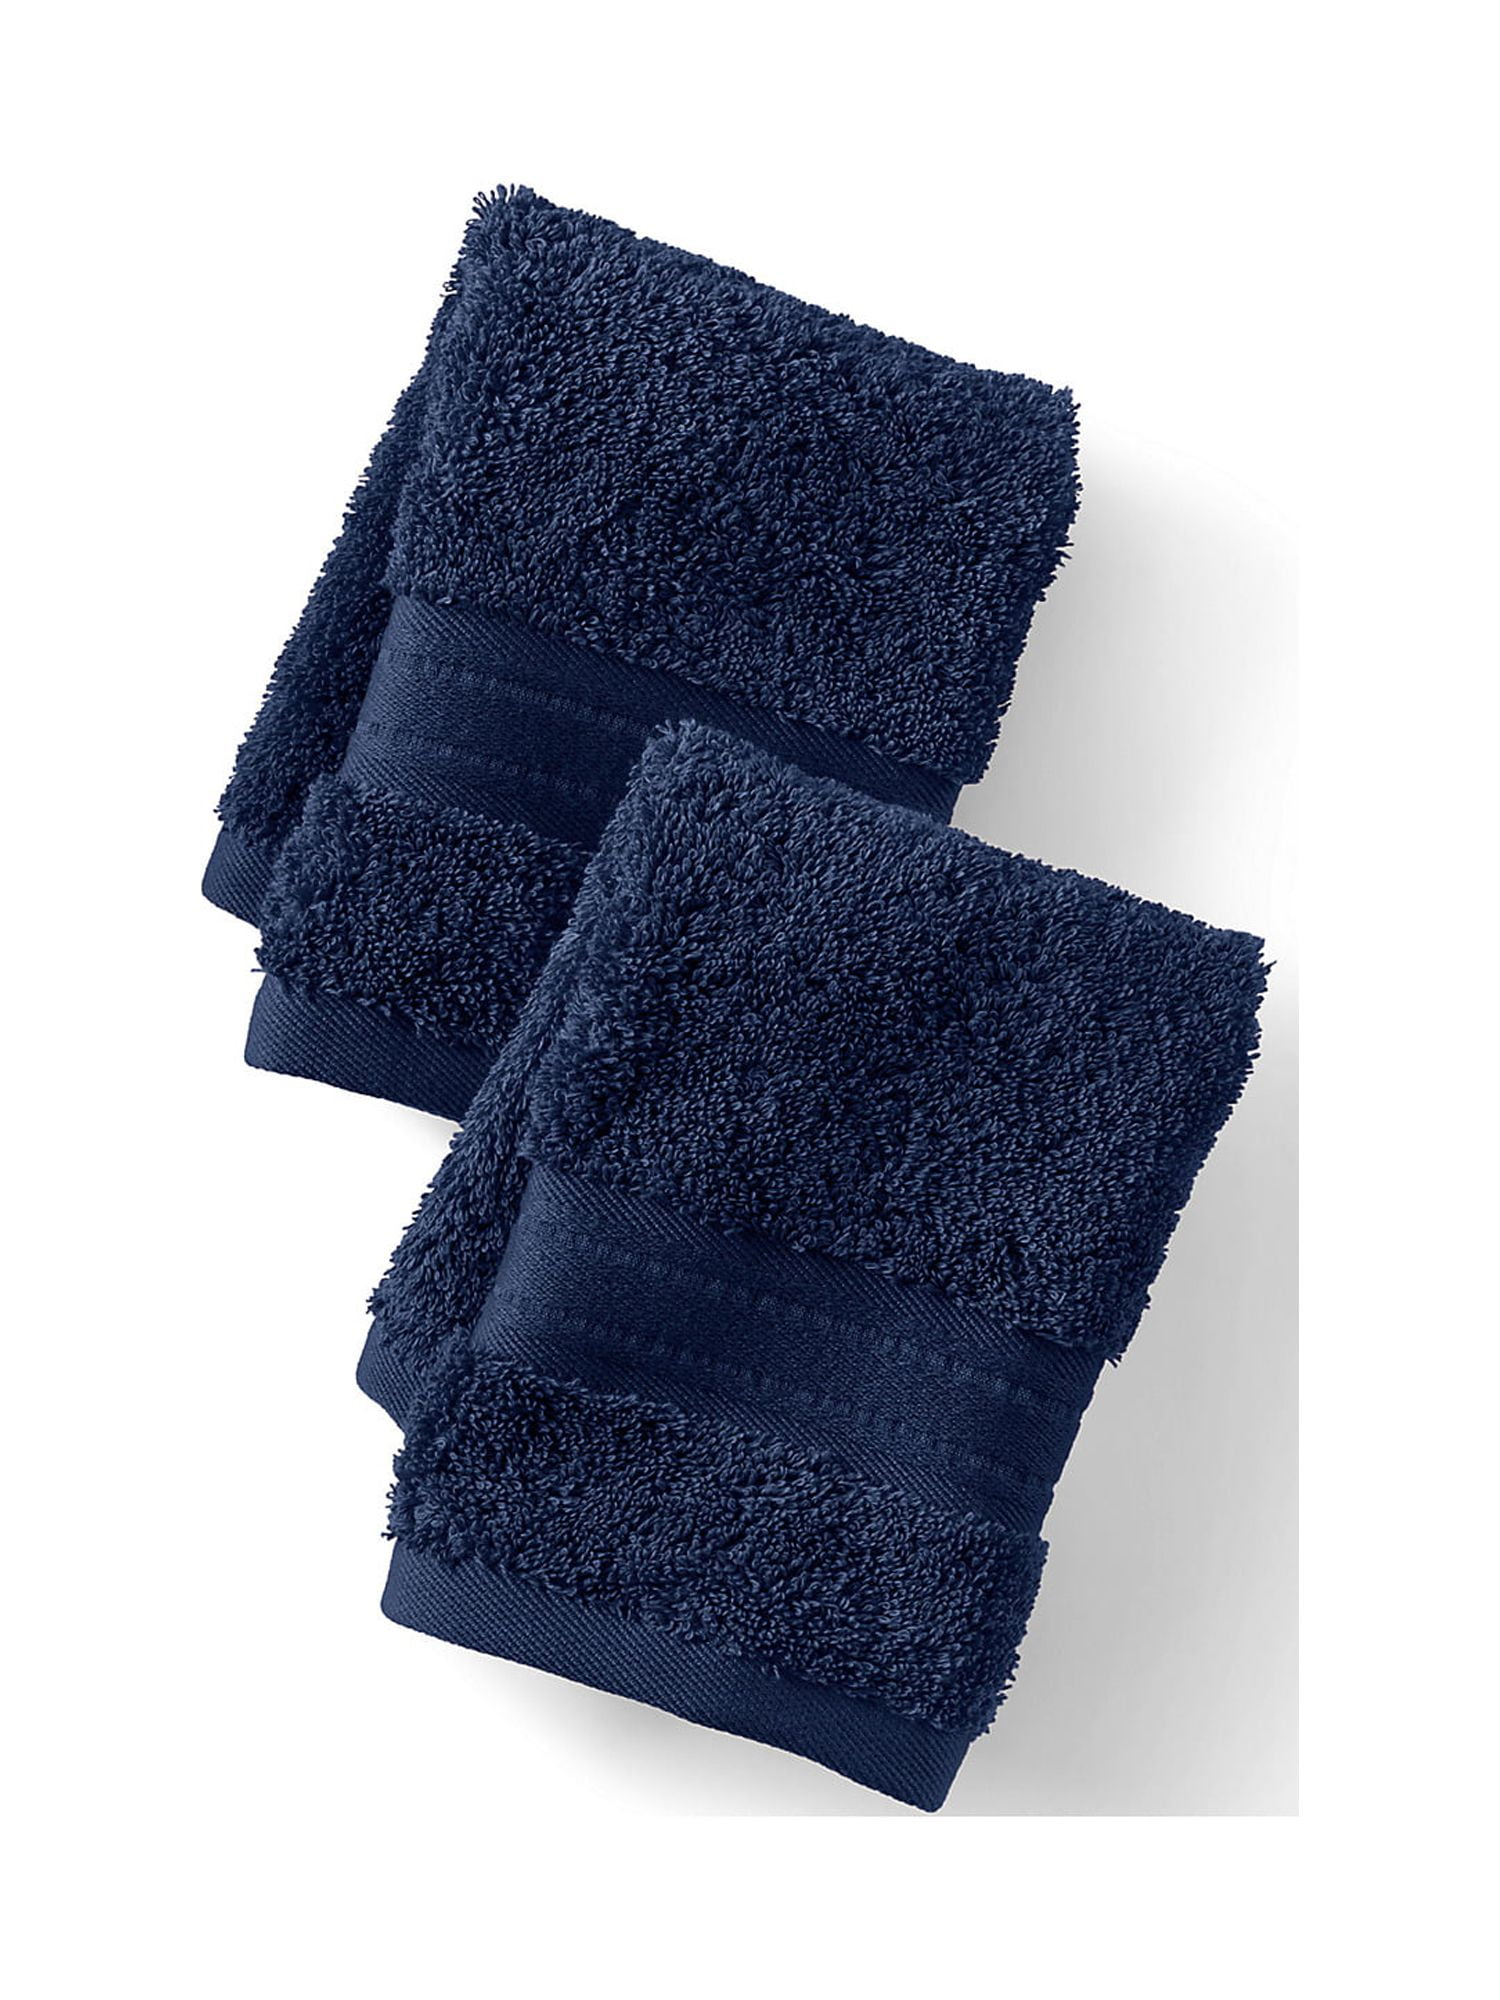 Premium Supima Cotton 2-Piece Washcloth Set - Lands' End - Blue